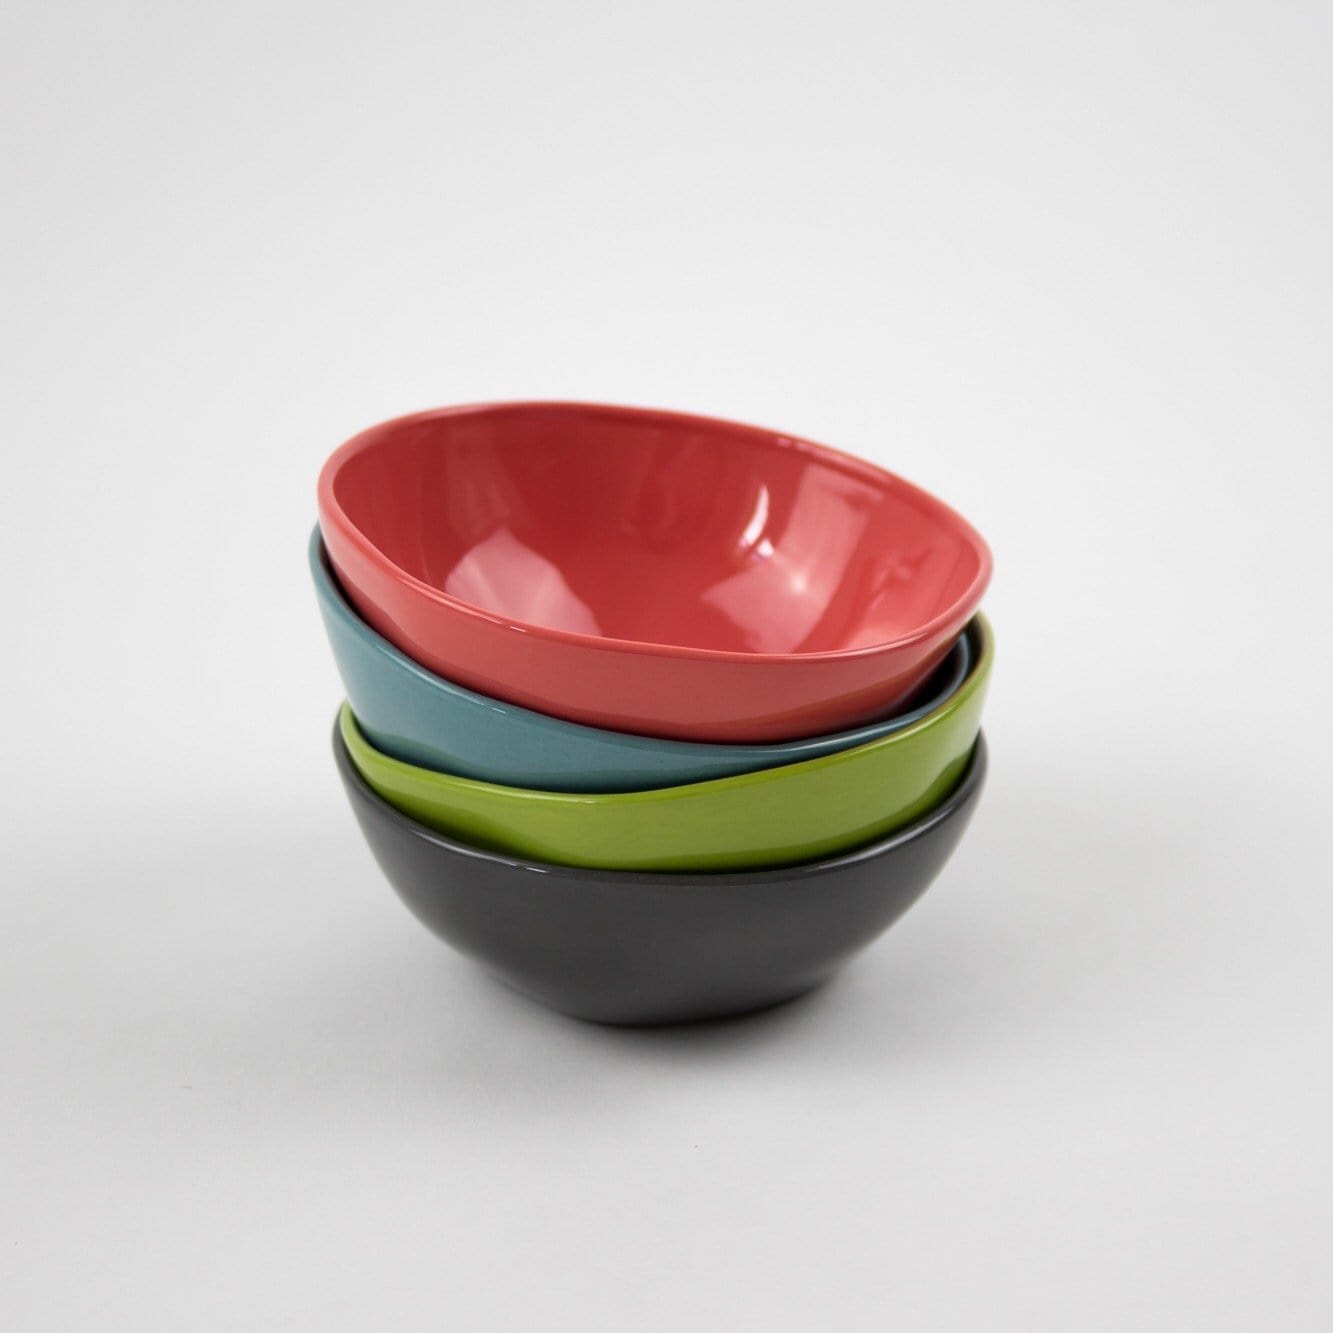 Green Small Ceramic Dipping Bowl